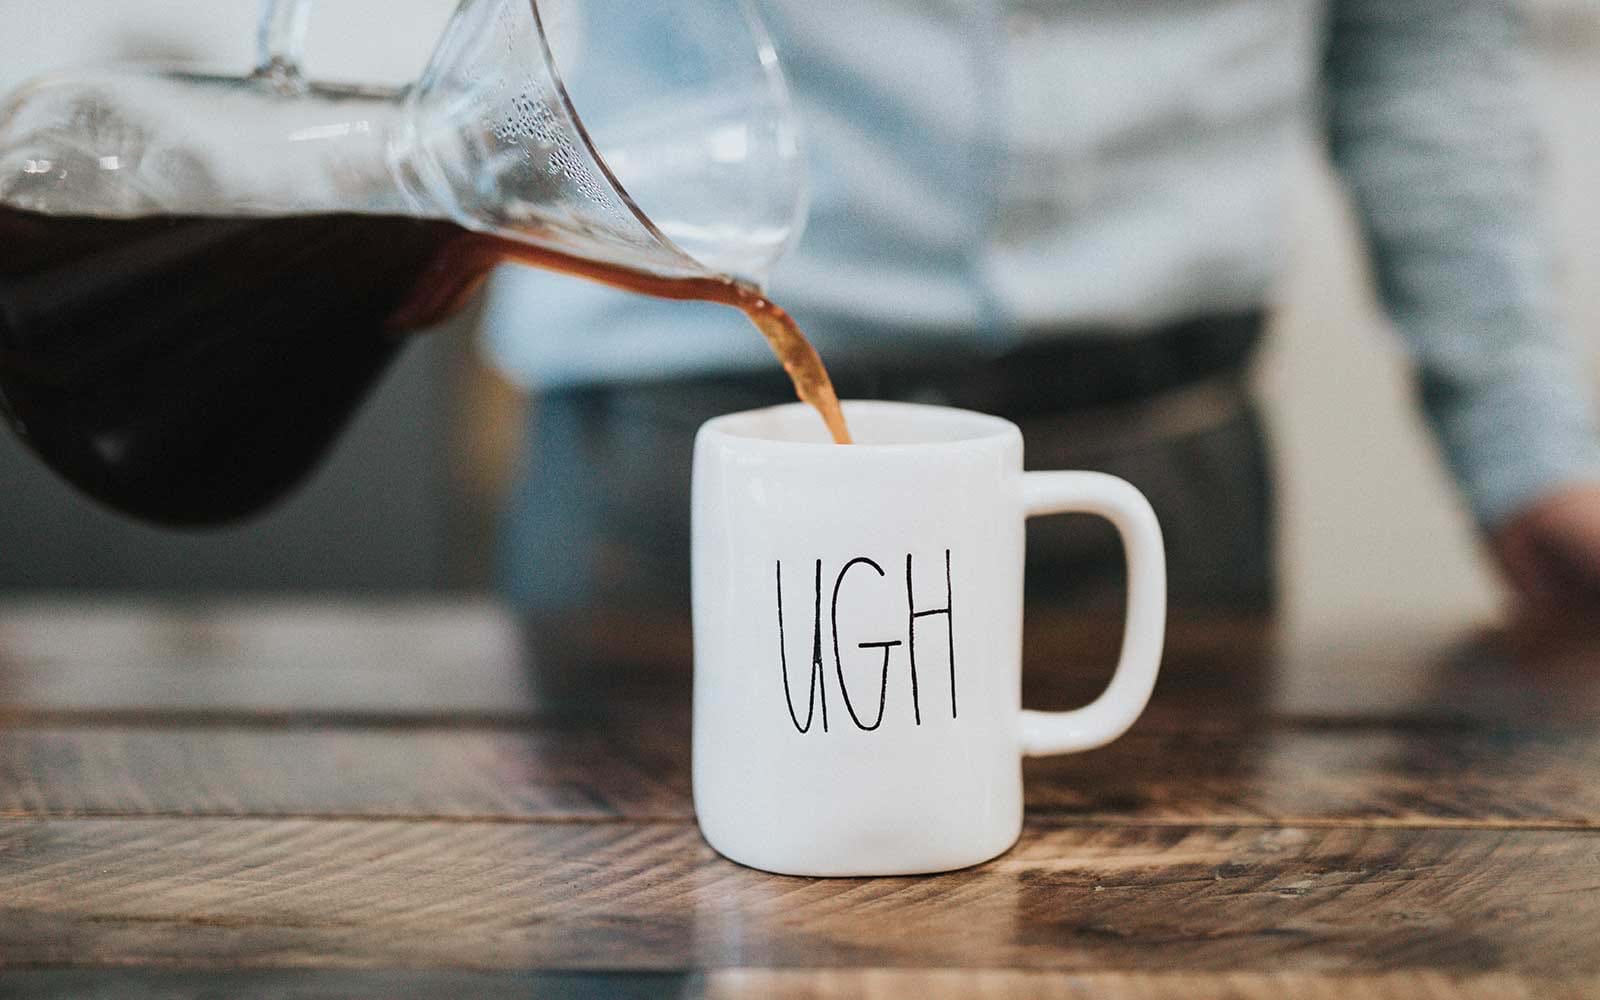 Pouring coffee into mug that says "ugh"